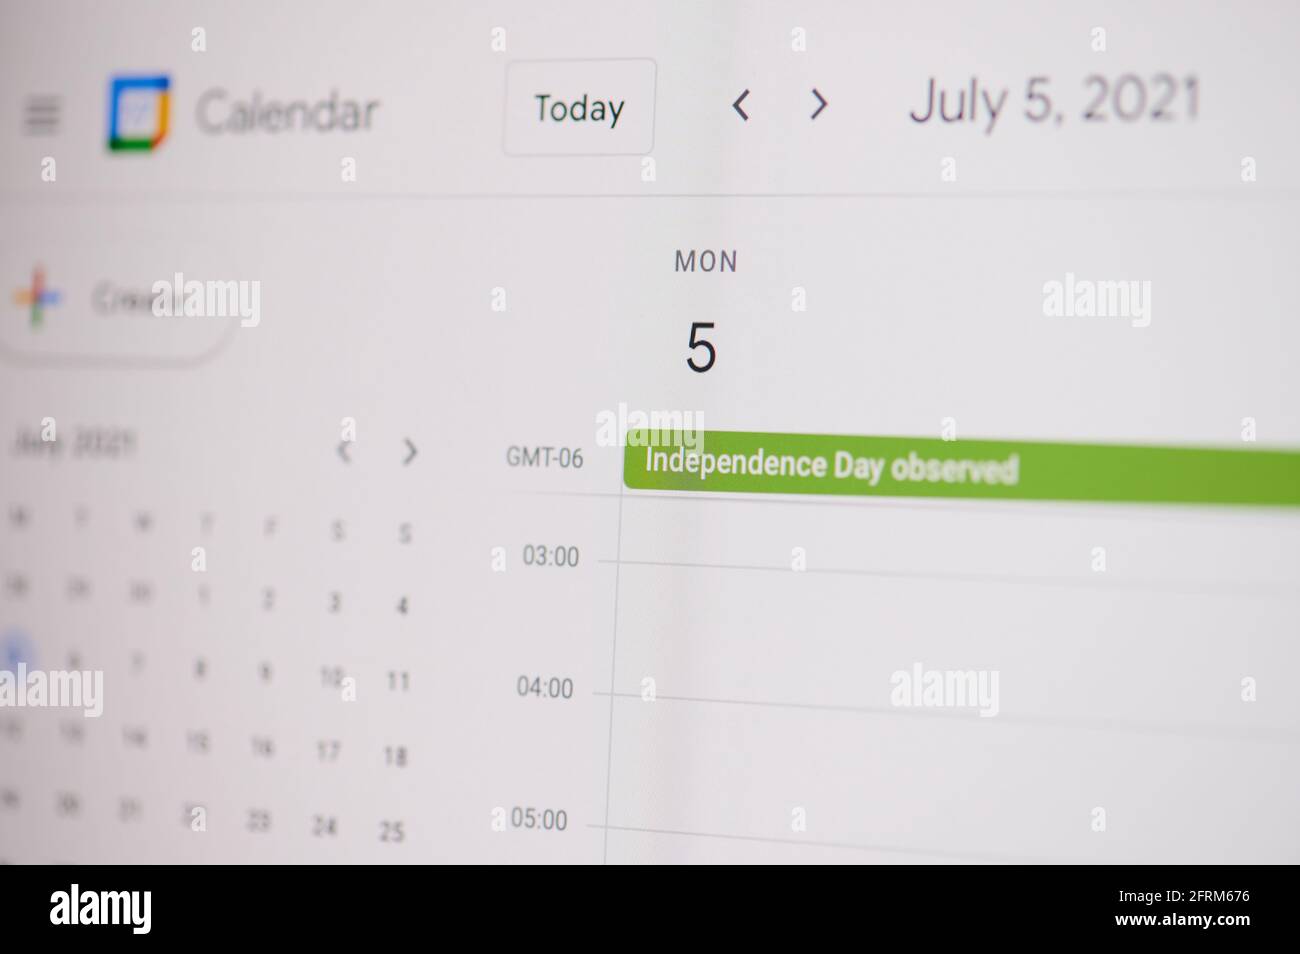 New york, USA - 17 febbraio 2021: Giornata dell'indipendenza osservata il 5 luglio sul calendario di google sullo schermo del portatile in vista ravvicinata. Foto Stock